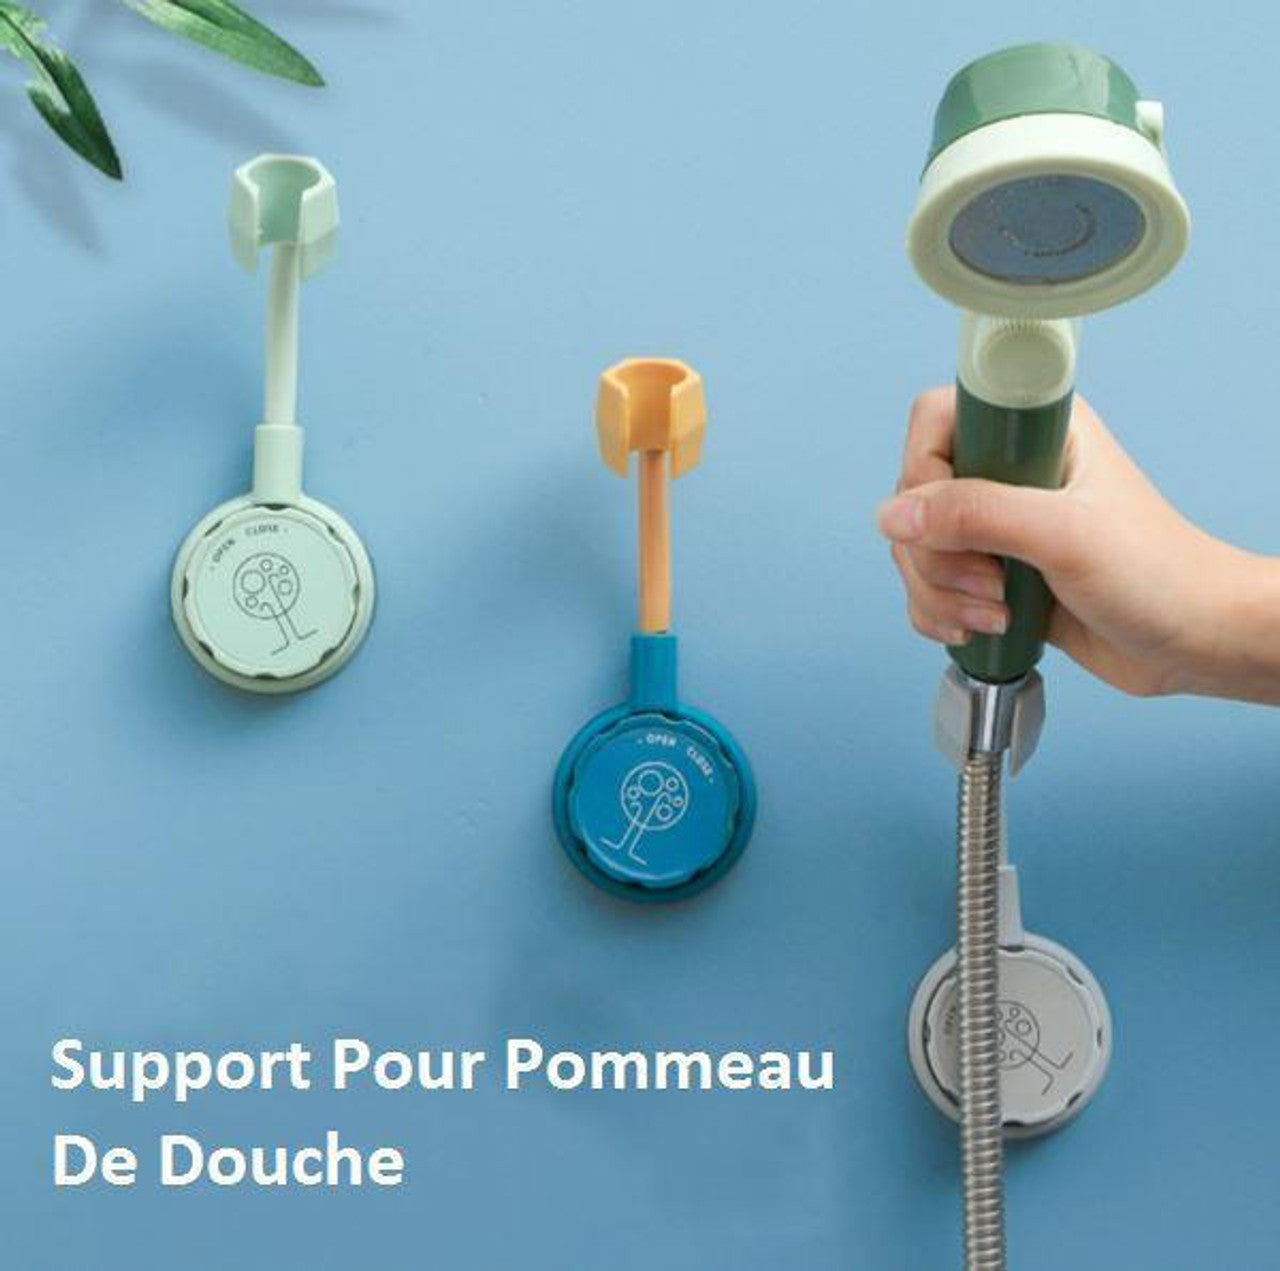 Support Pour Pommeau De Douche